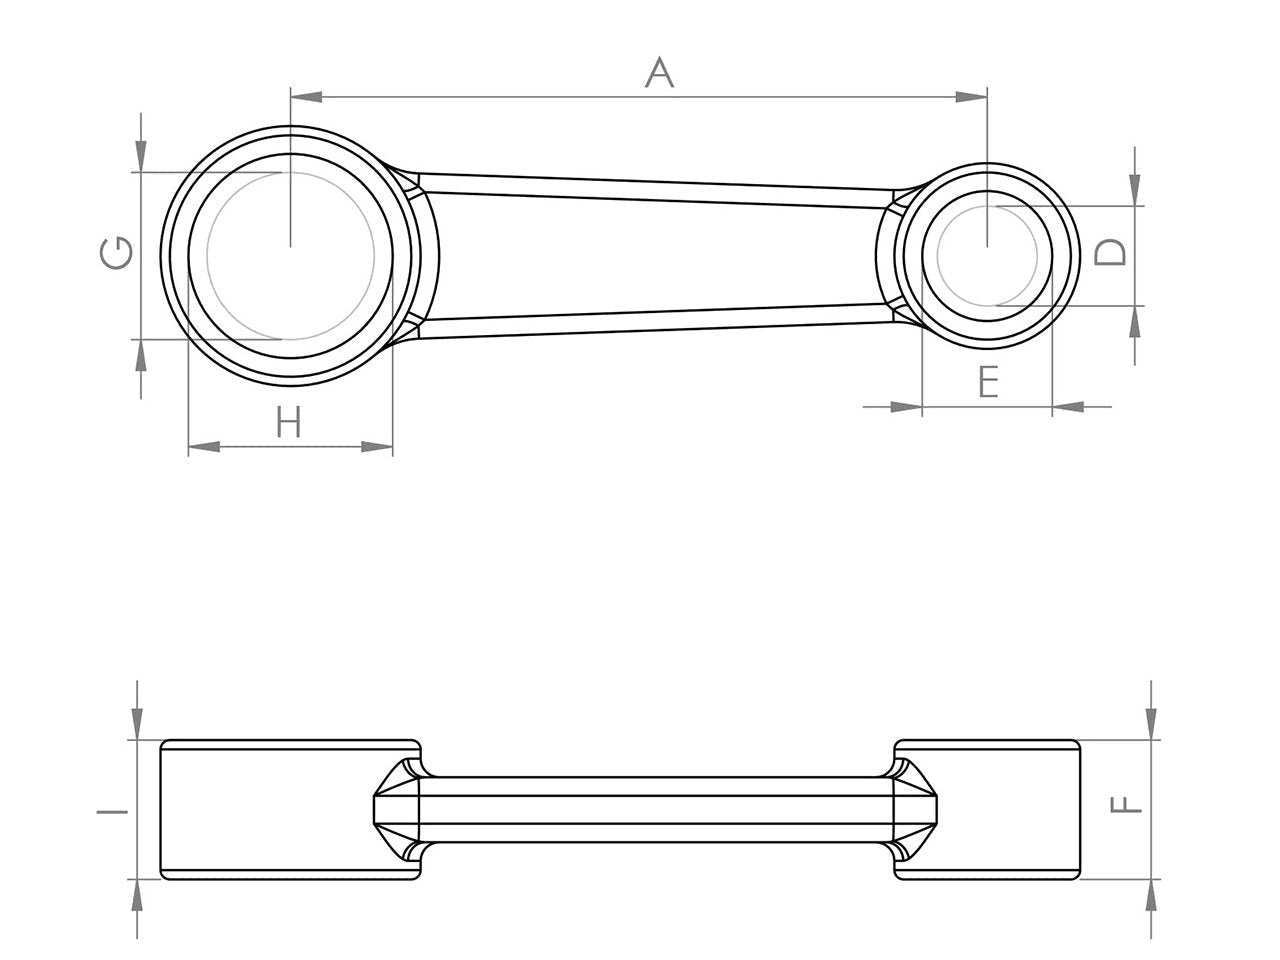 Zeichnung Barikit Pleuel für einen Yamaha Majesty 250 Motor mit Bemaßung.